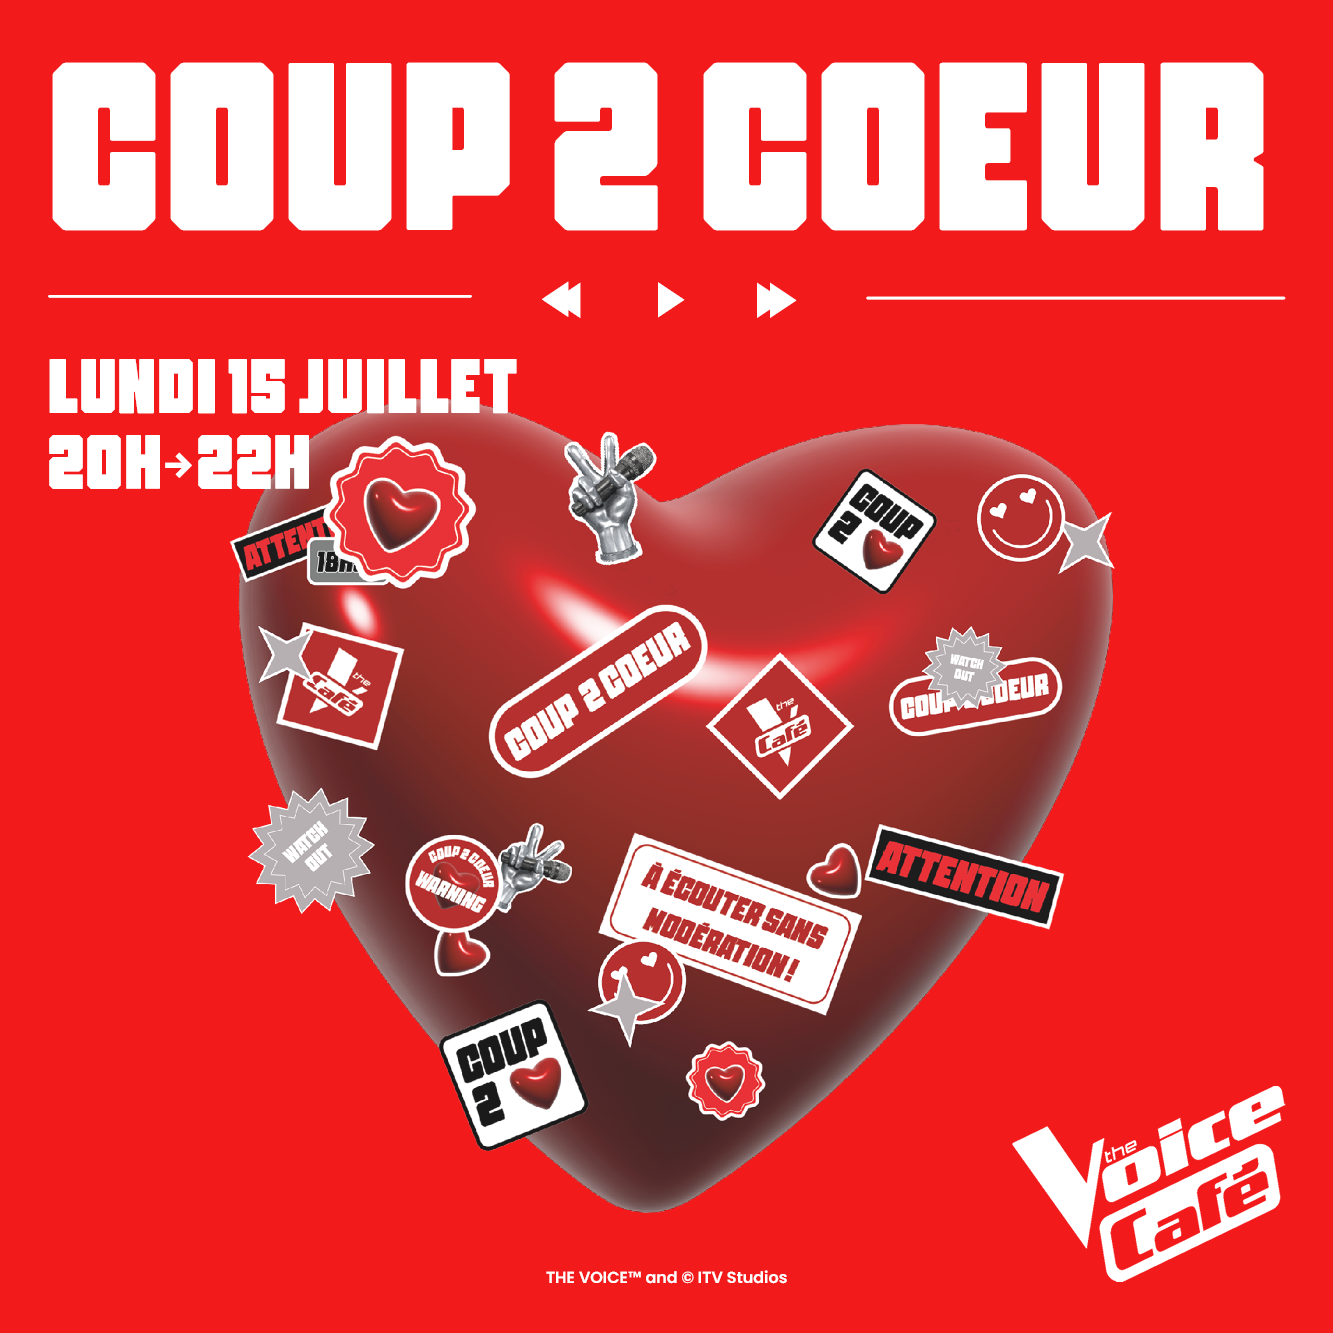 COUP 2 COEUR – SOIREE DECOUVERTE TALENTS